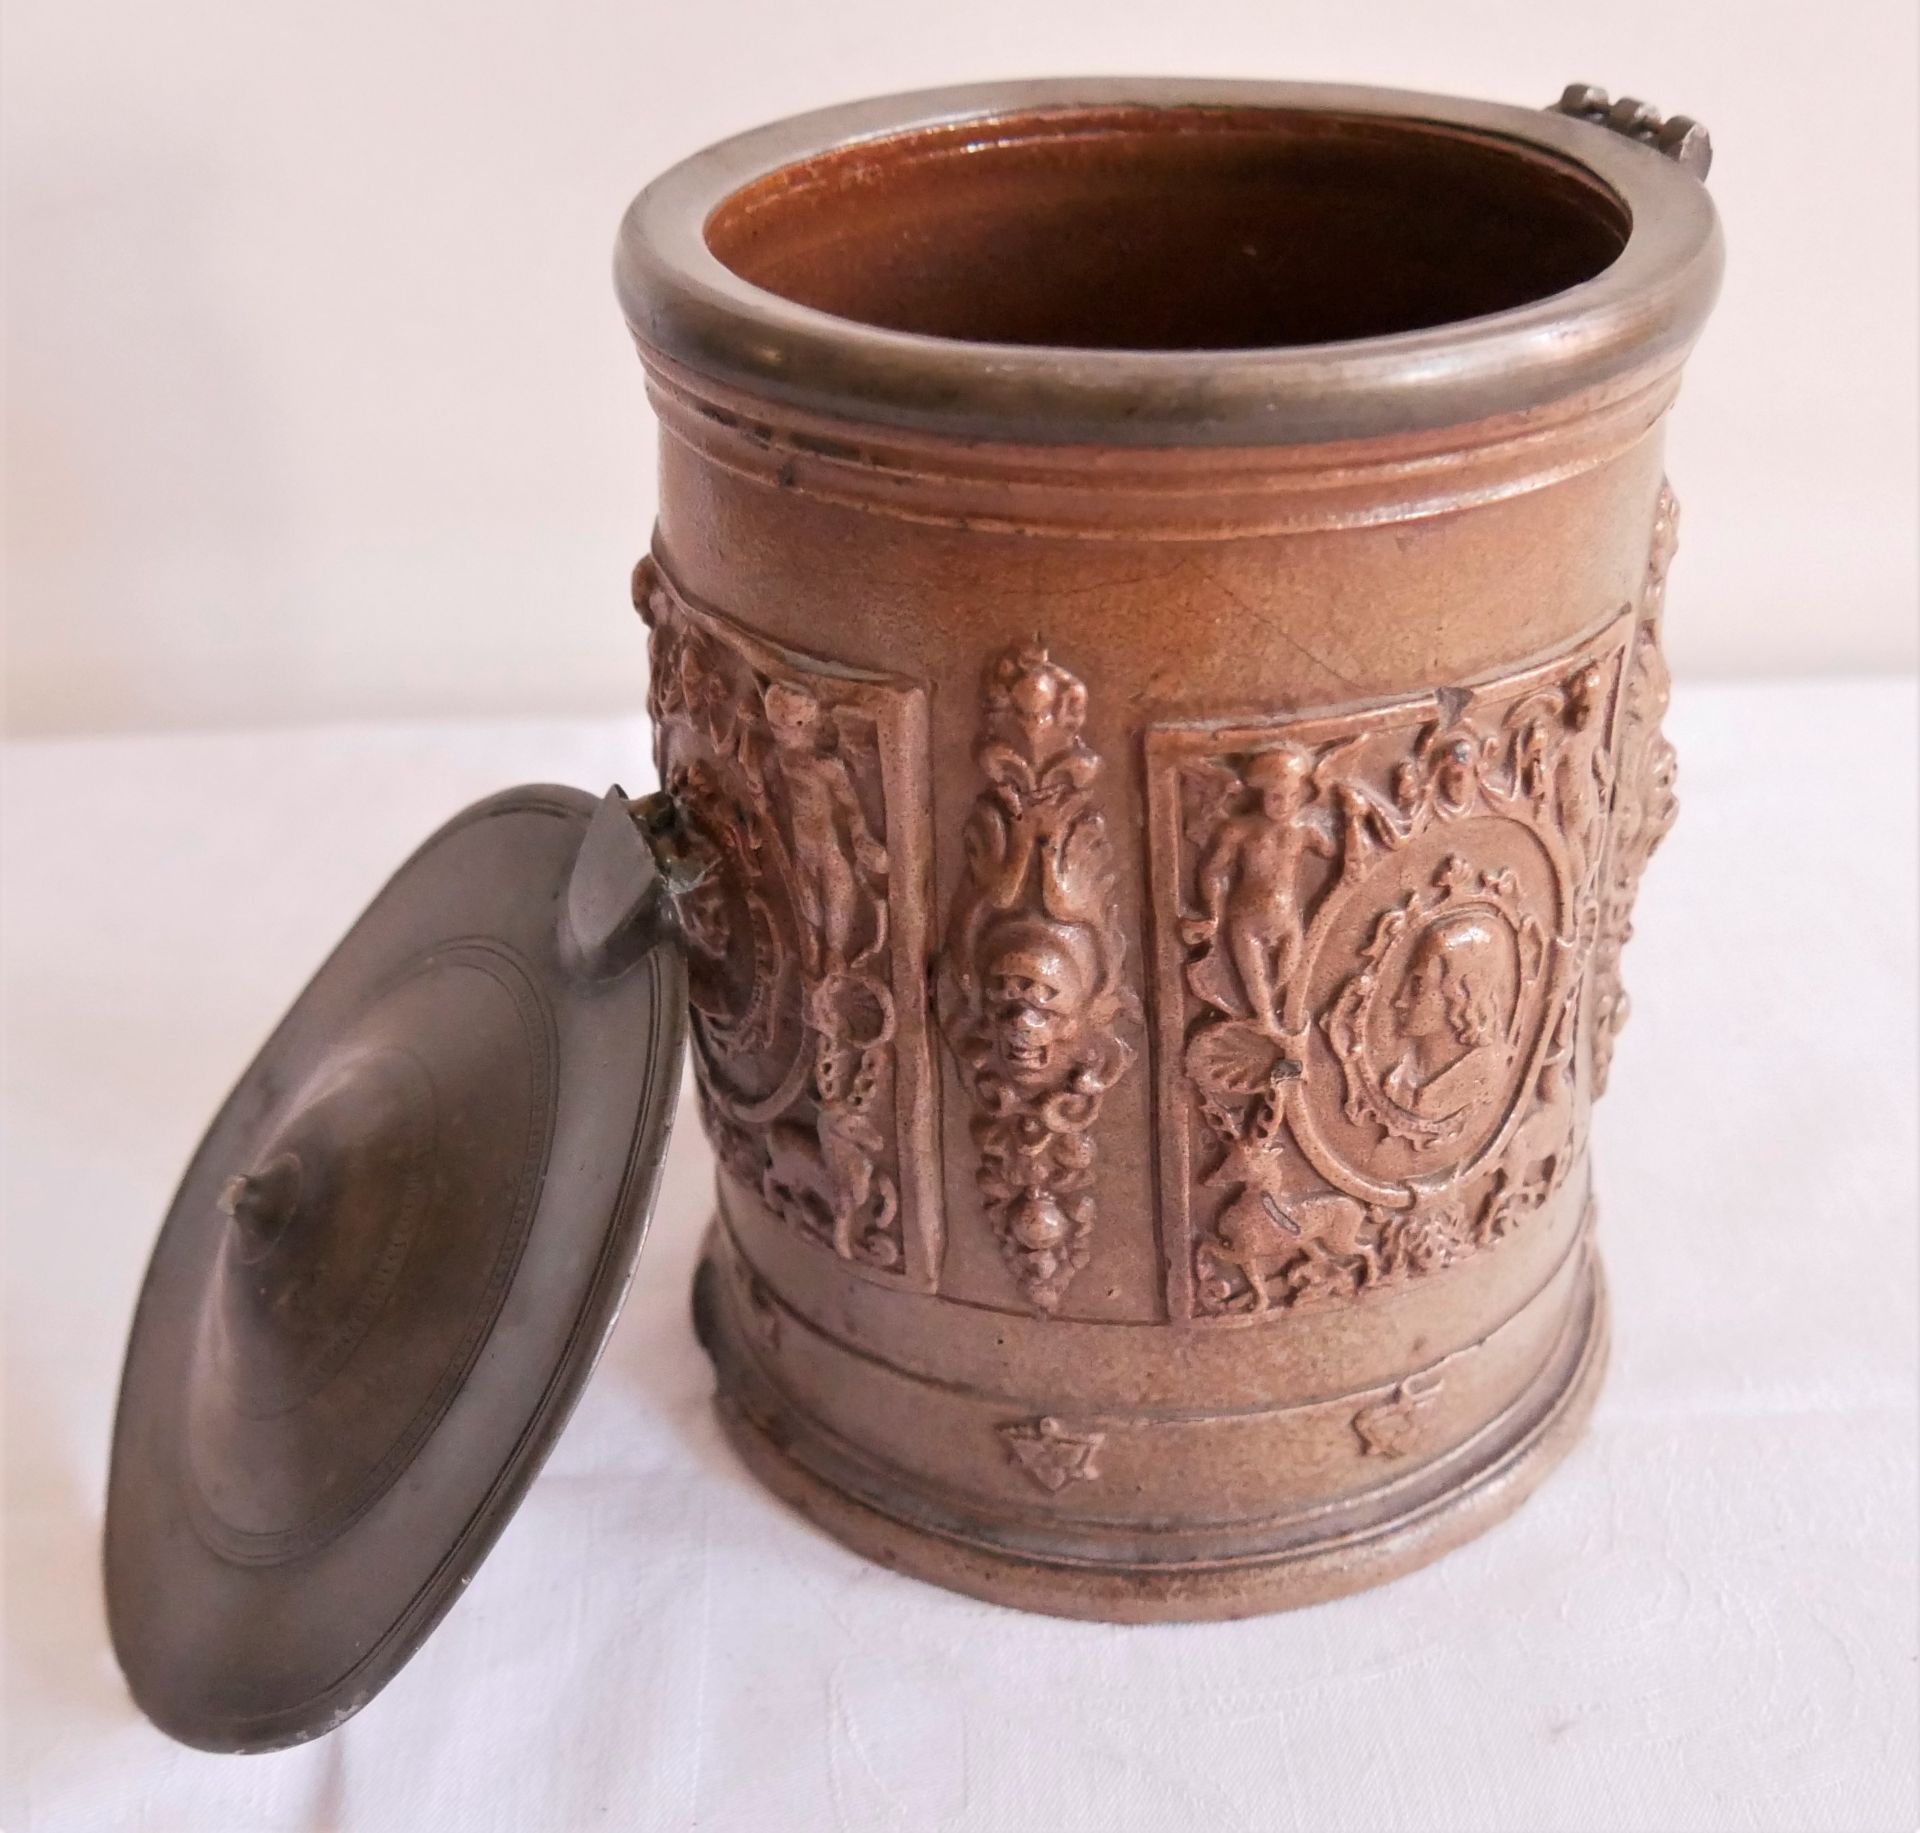 alter Keramik Tabaktopf um 1850, defekt zum restaurieren sowie eine alte Tabakblechdose. - Image 3 of 4